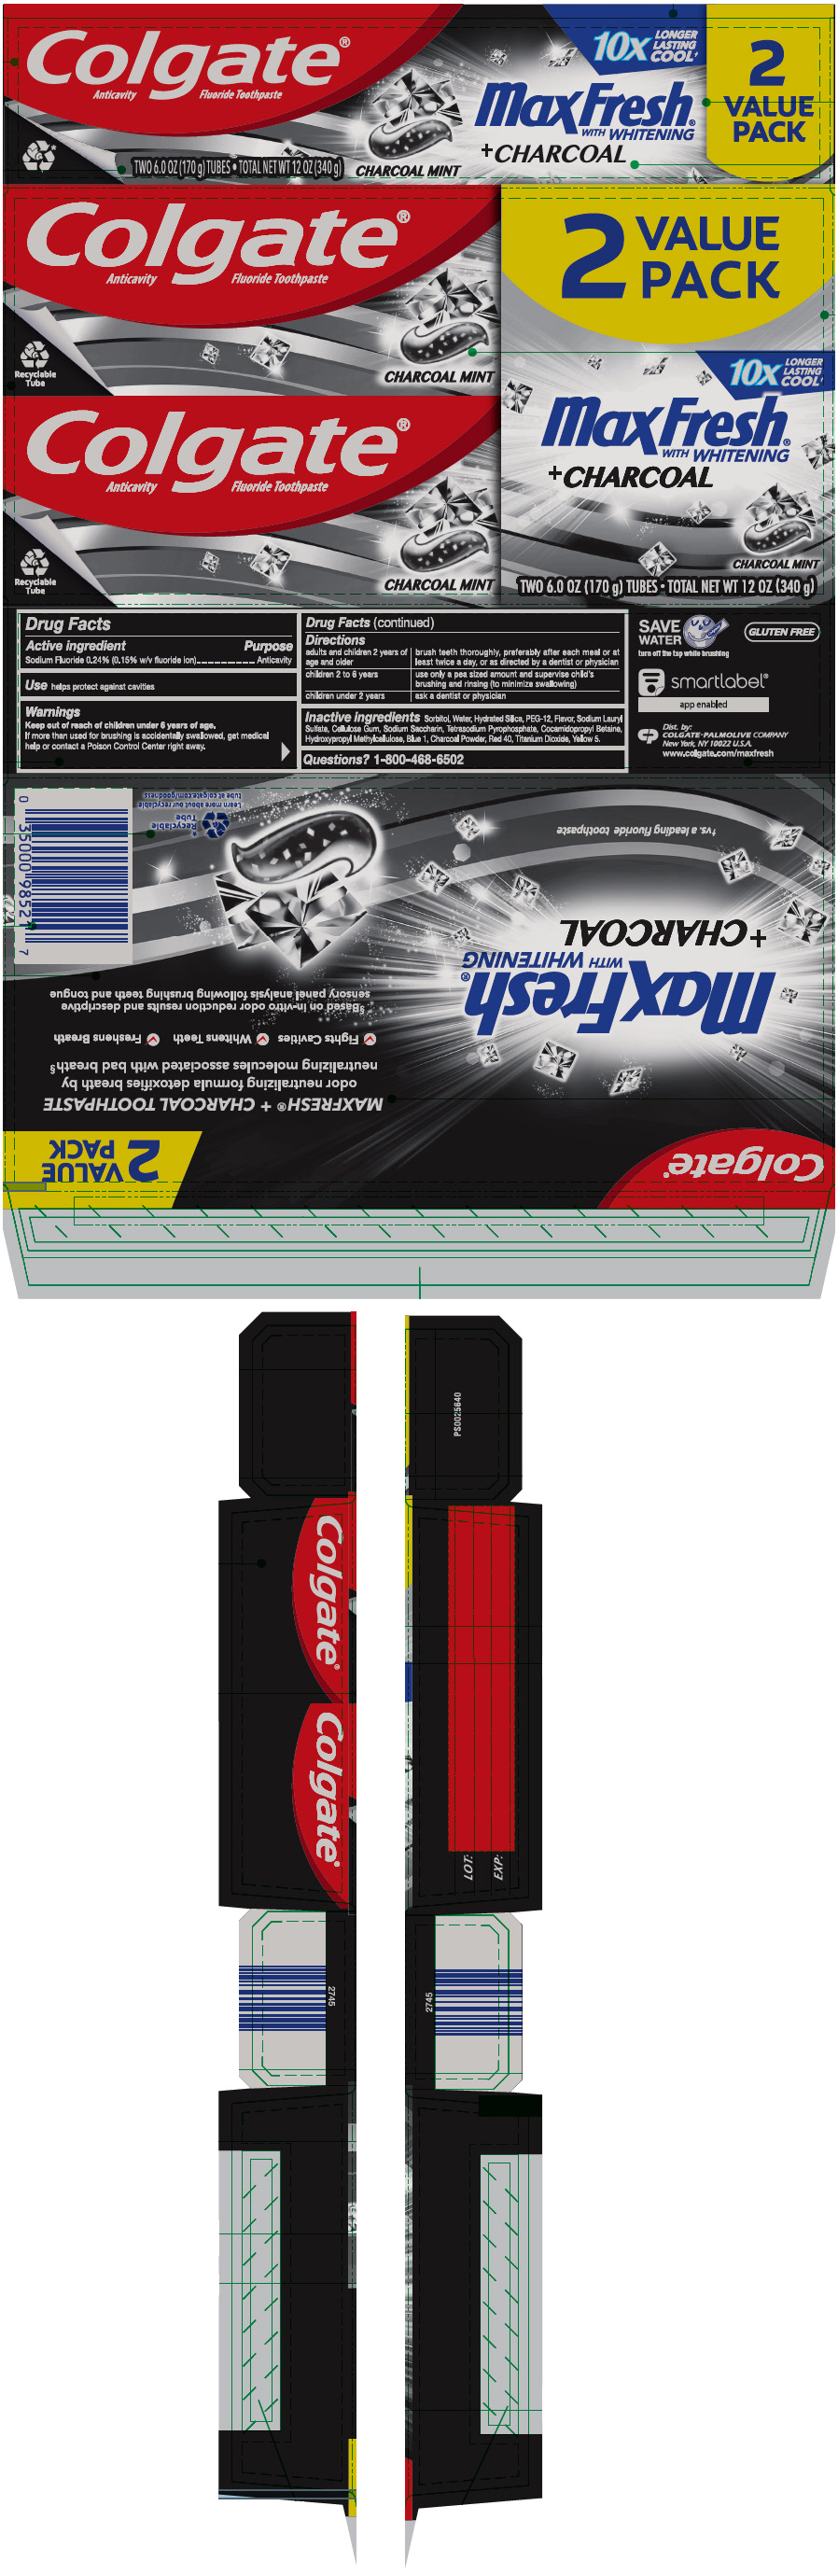 PRINCIPAL DISPLAY PANEL - Two 170 g Tube Carton